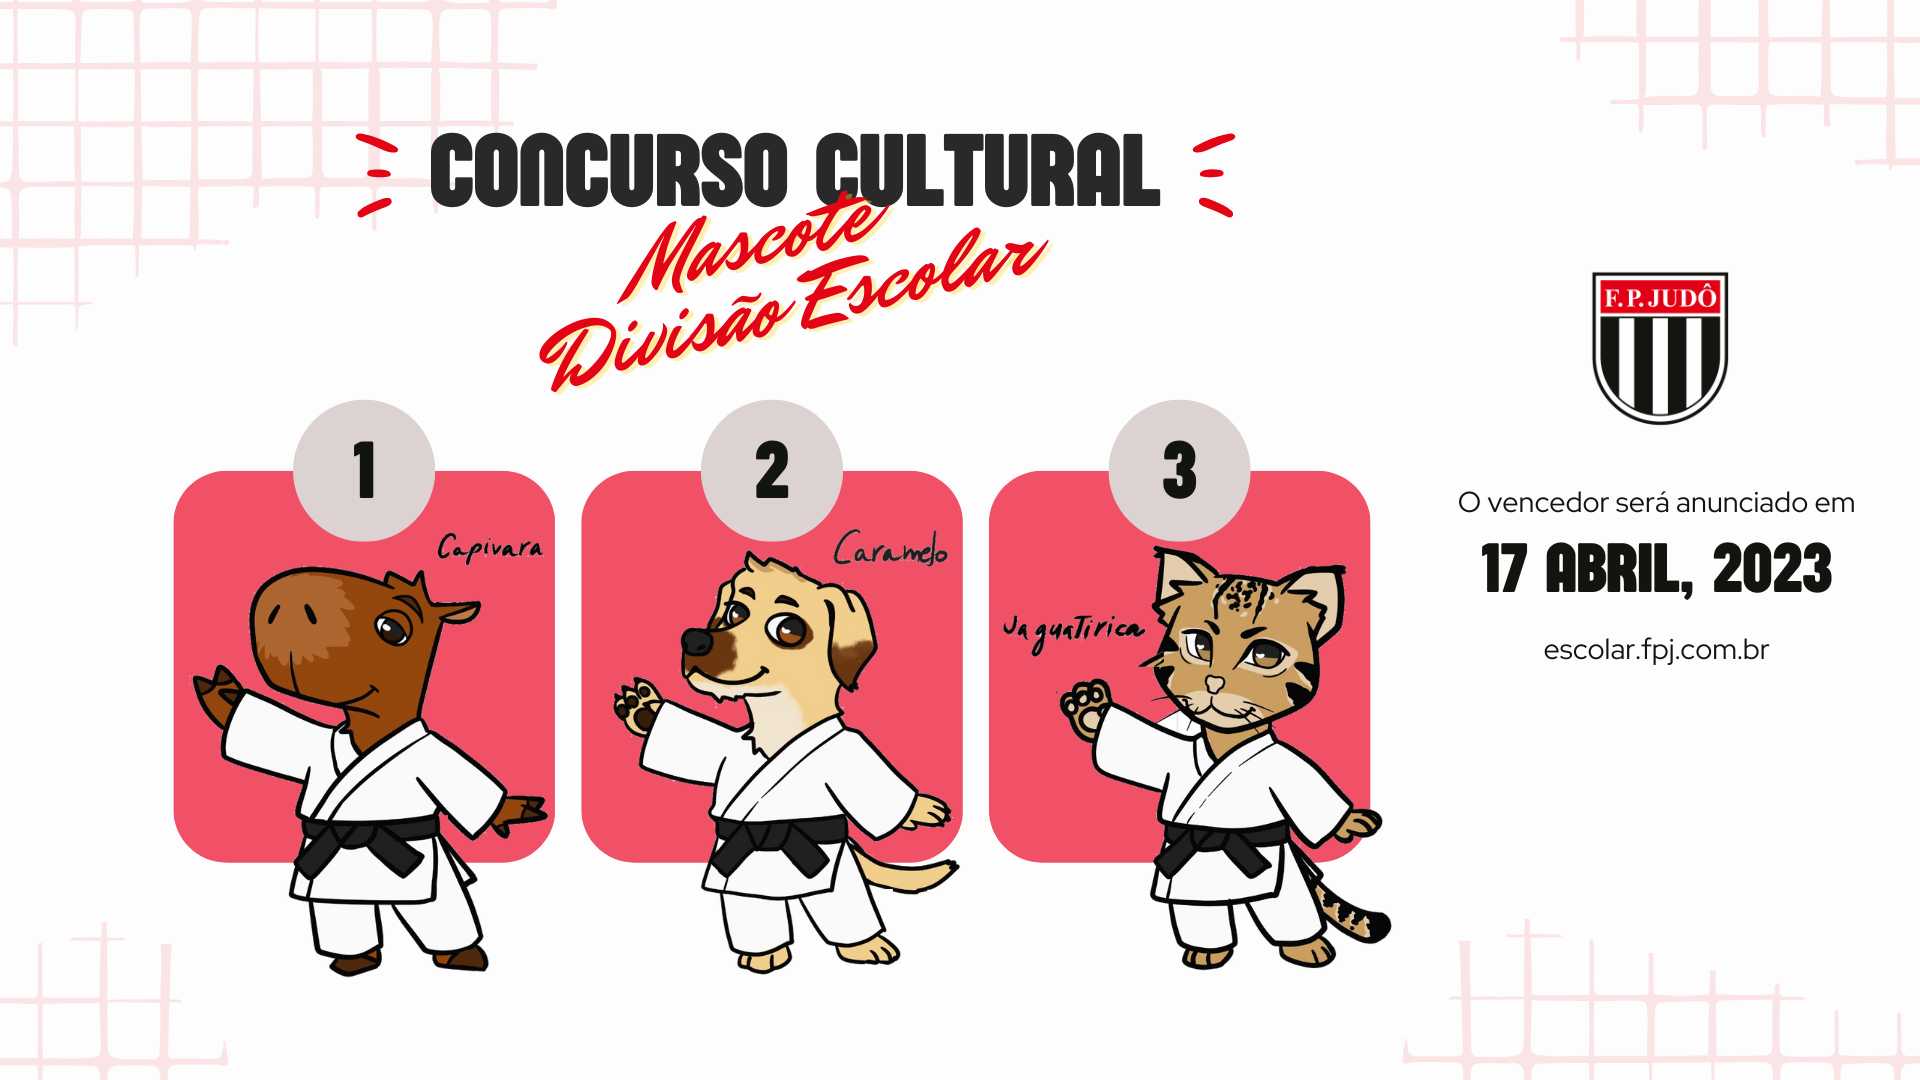 Concurso cultural mascote divisao escolar (wide)